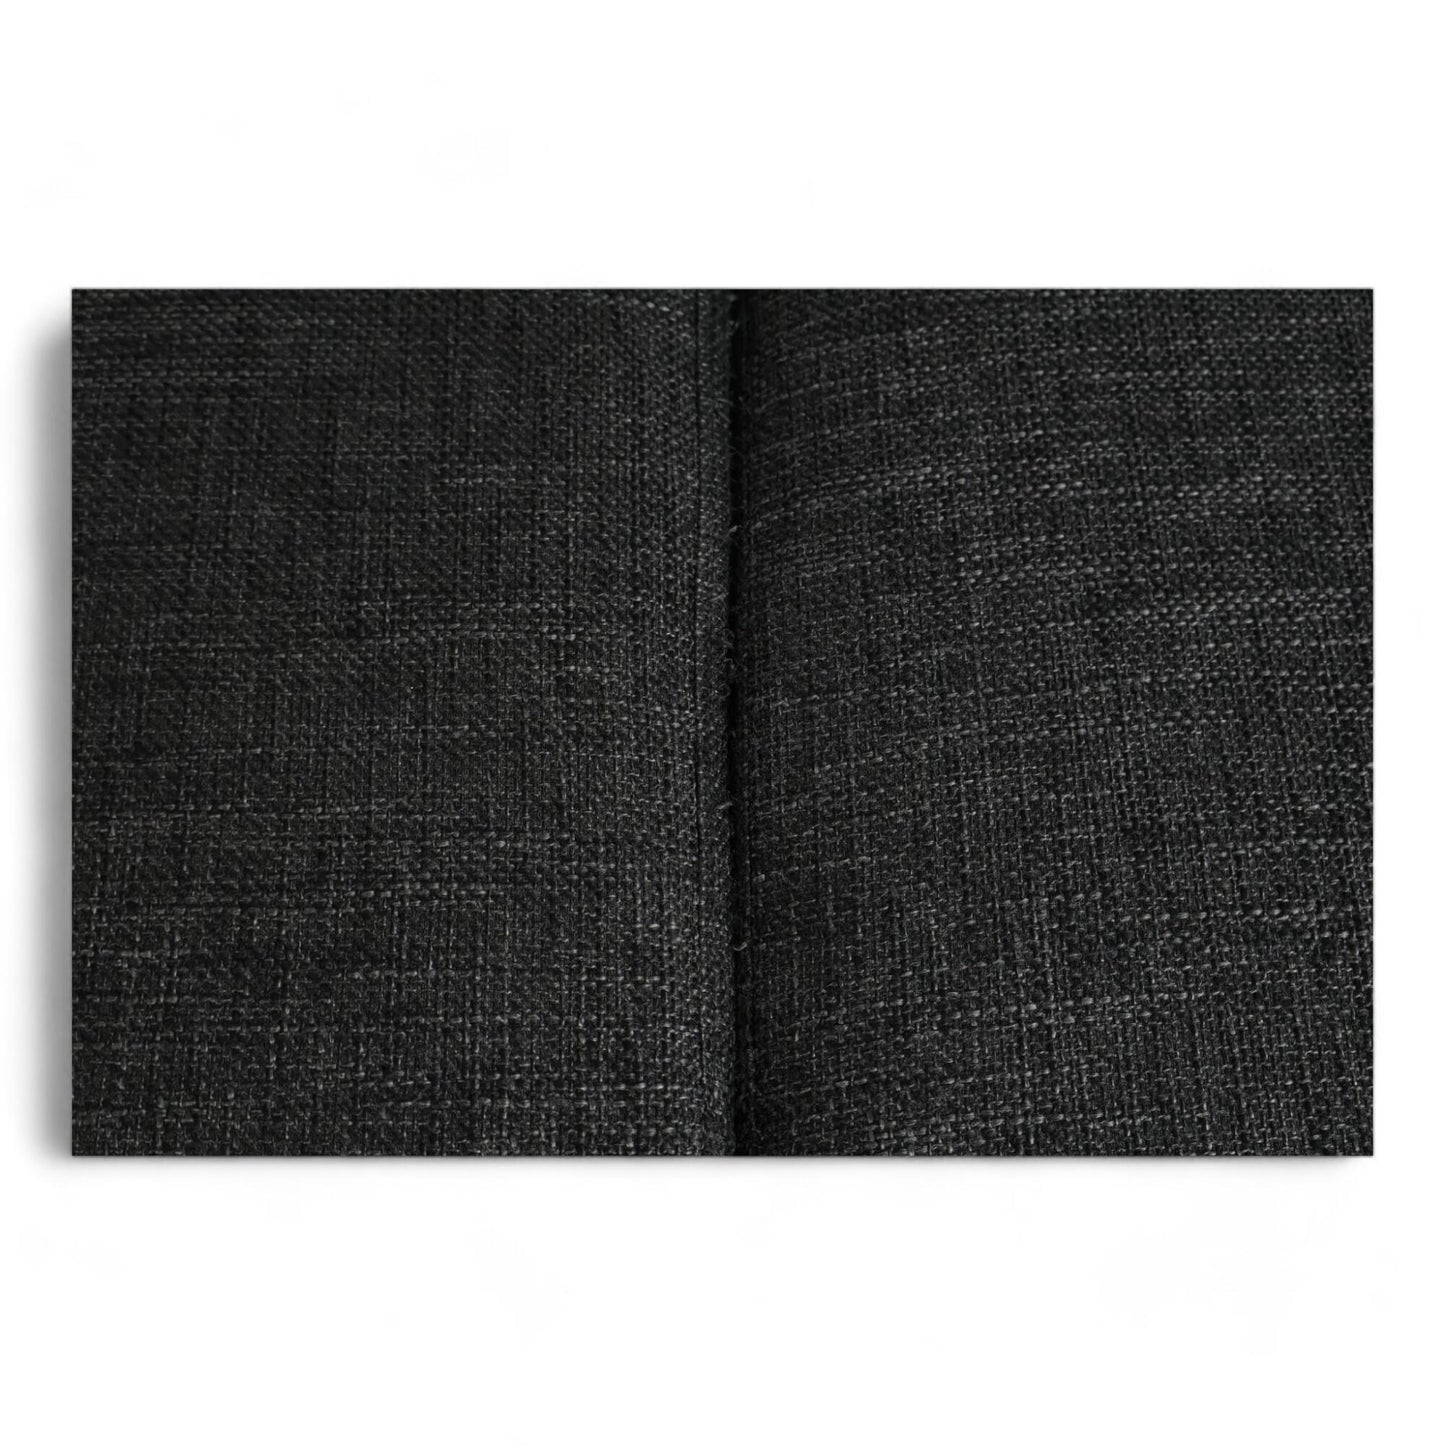 Nyrenset | Mørk grå Bellus Balmar sofa med sjeselong